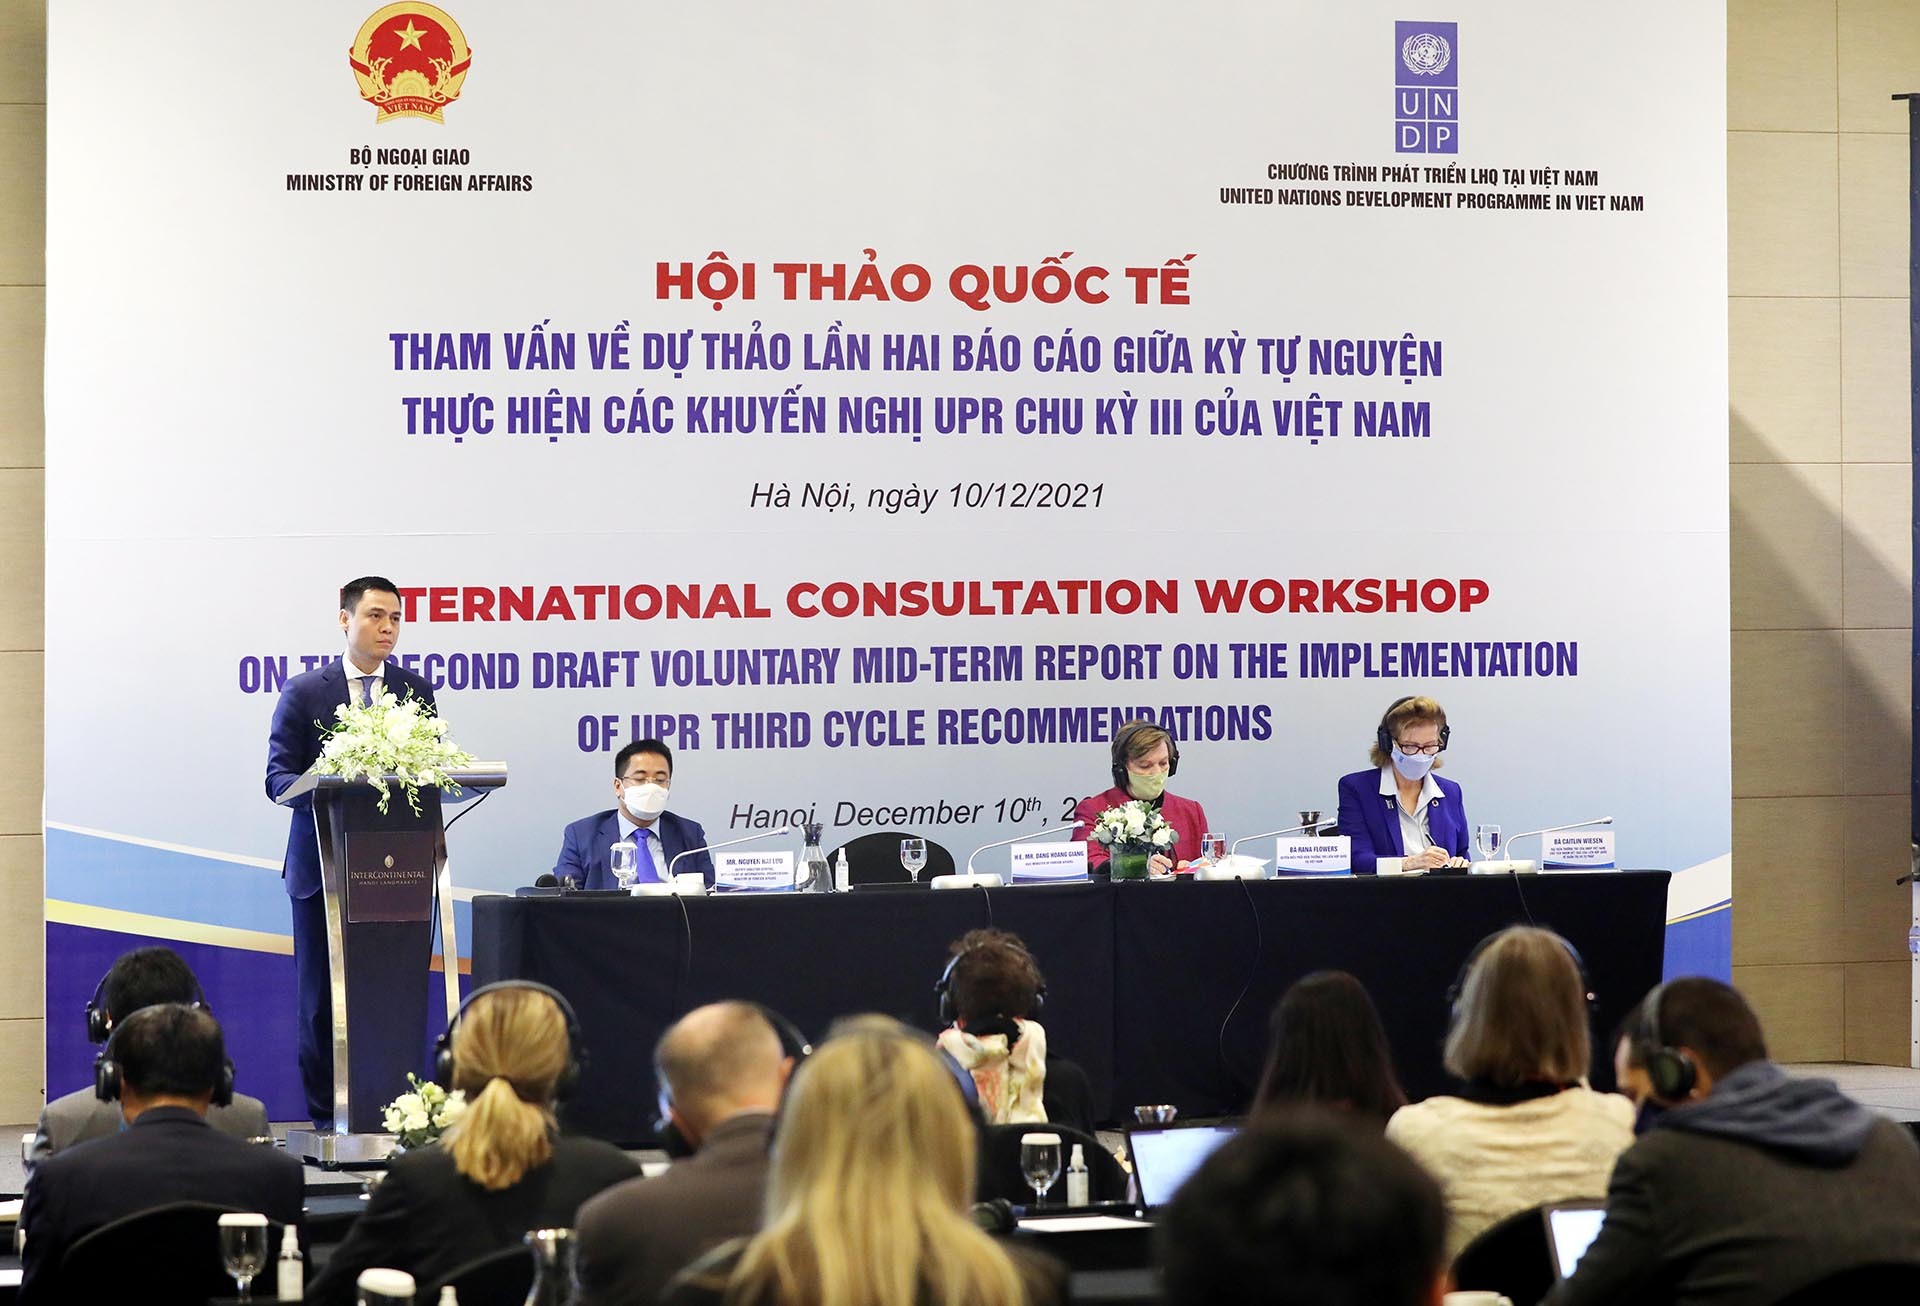 Bộ Ngoại giao phối hợp với Chương trình Phát triển Liên hợp quốc (LHQ) (UNDP) tại Việt Nam đã tổ chức Hội thảo tham vấn lần thứ hai về dự thảo Báo cáo giữa kỳ tự nguyện thực hiện các khuyến nghị theo Cơ chế Rà soát định kỳ phổ quát (UPR) chu kỳ III của Việt Nam.